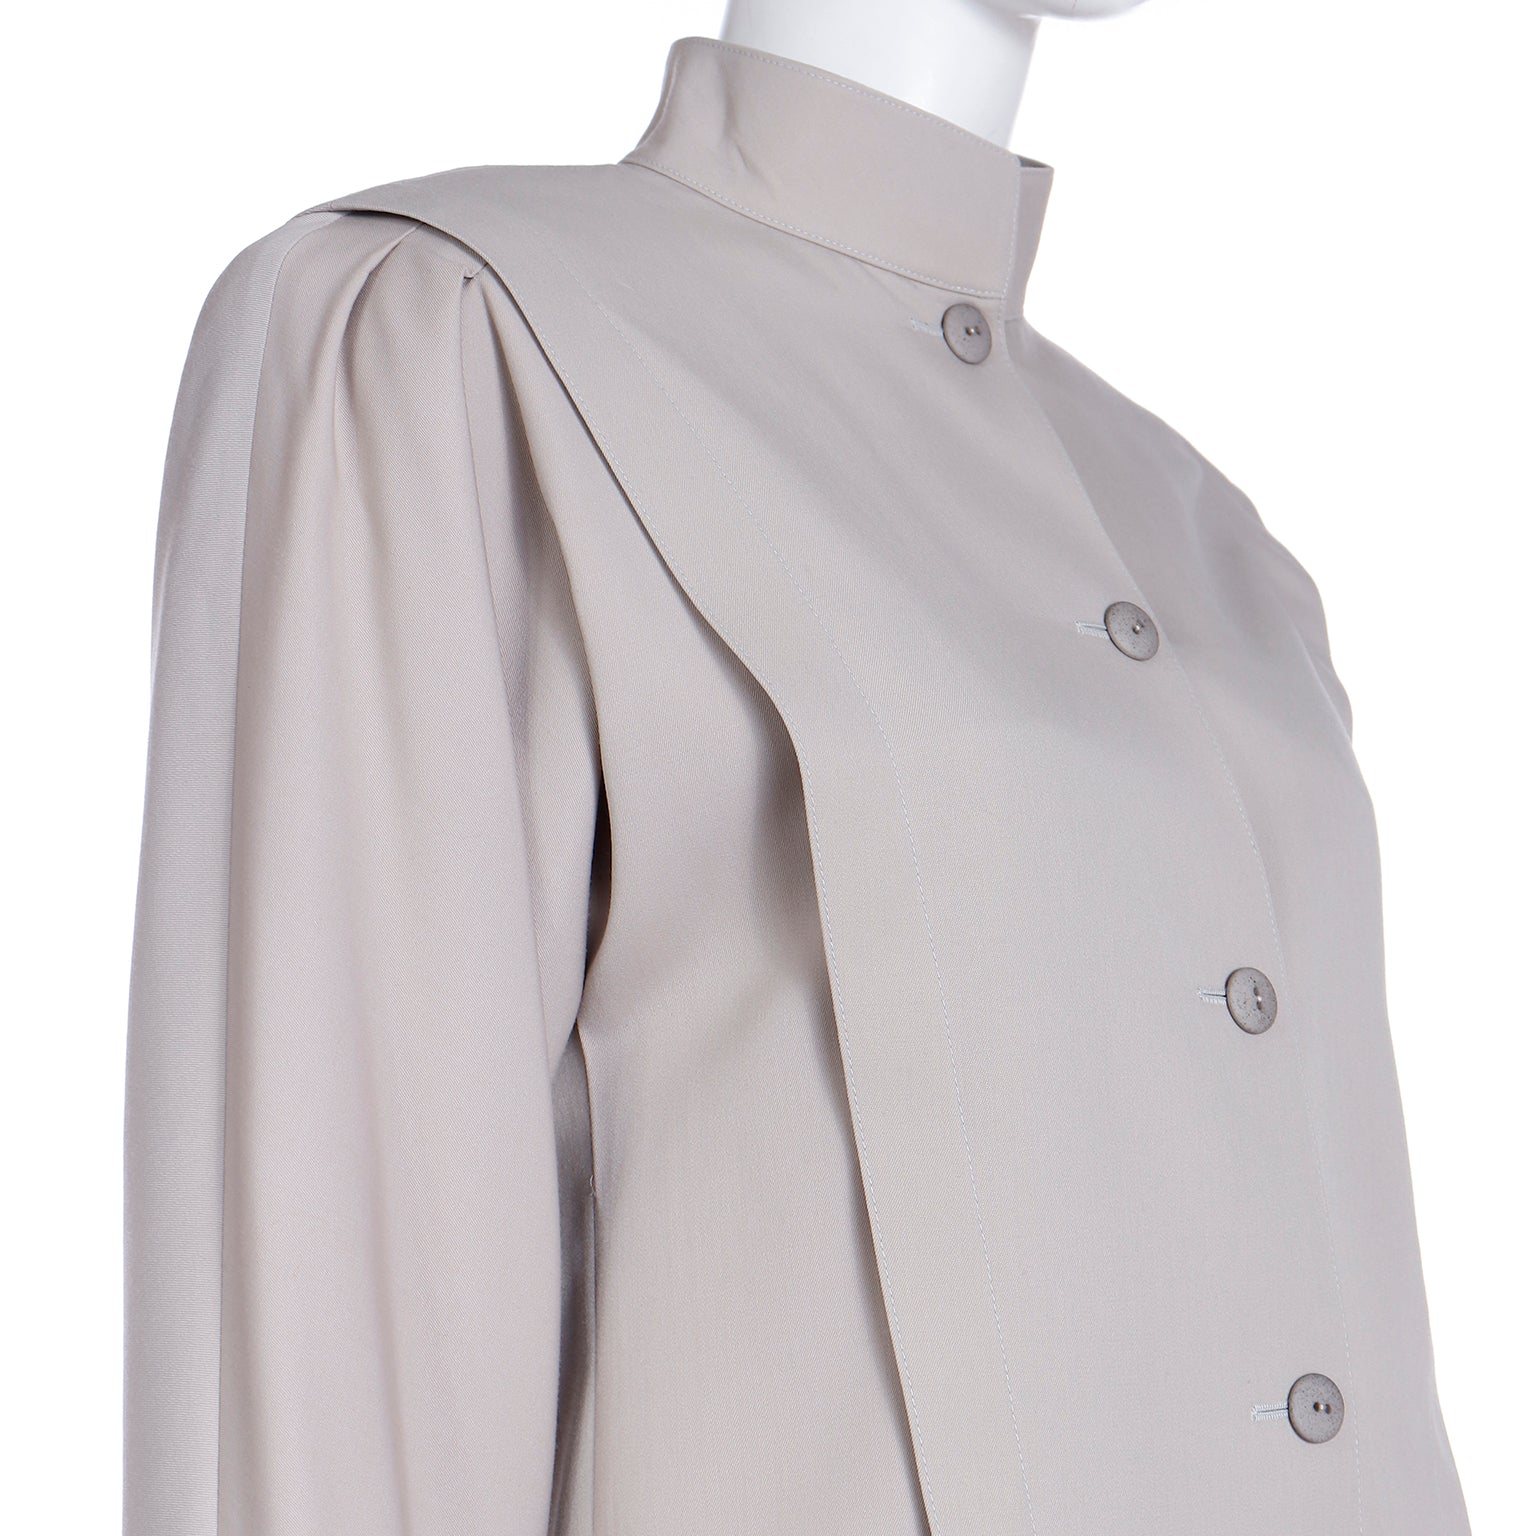 Louis Feraud Suit Louis Faraud Skirt Suit Gray Tweed Skirt 